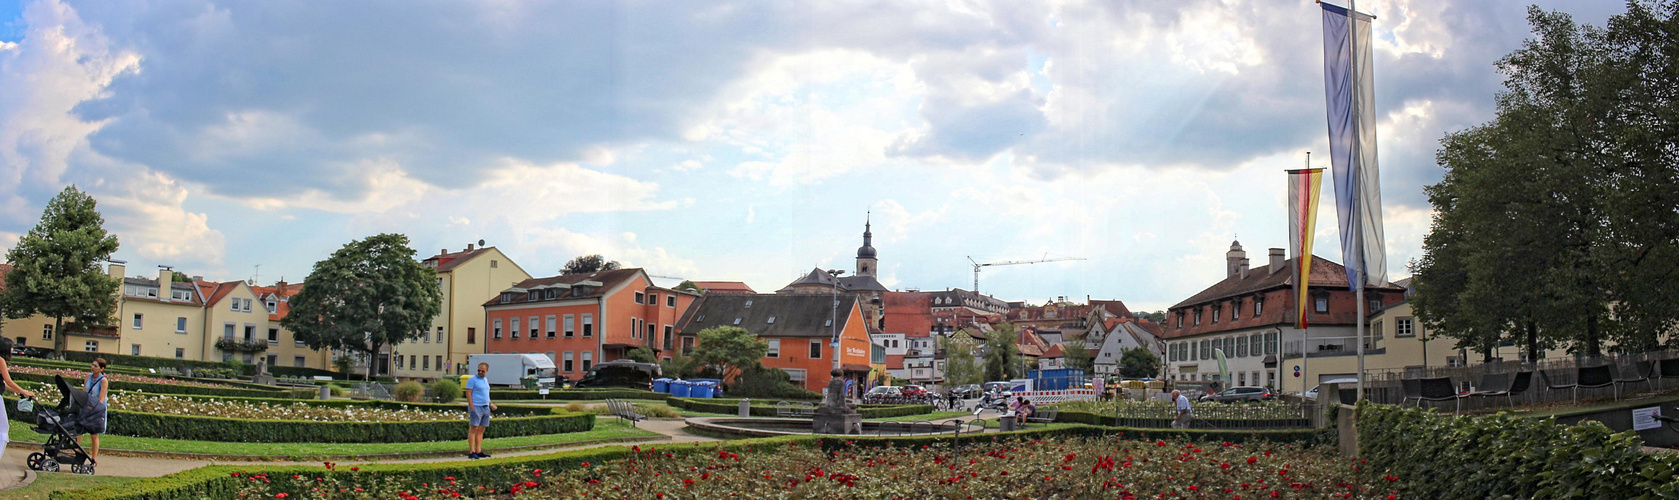 centro antiguo de Bamberg